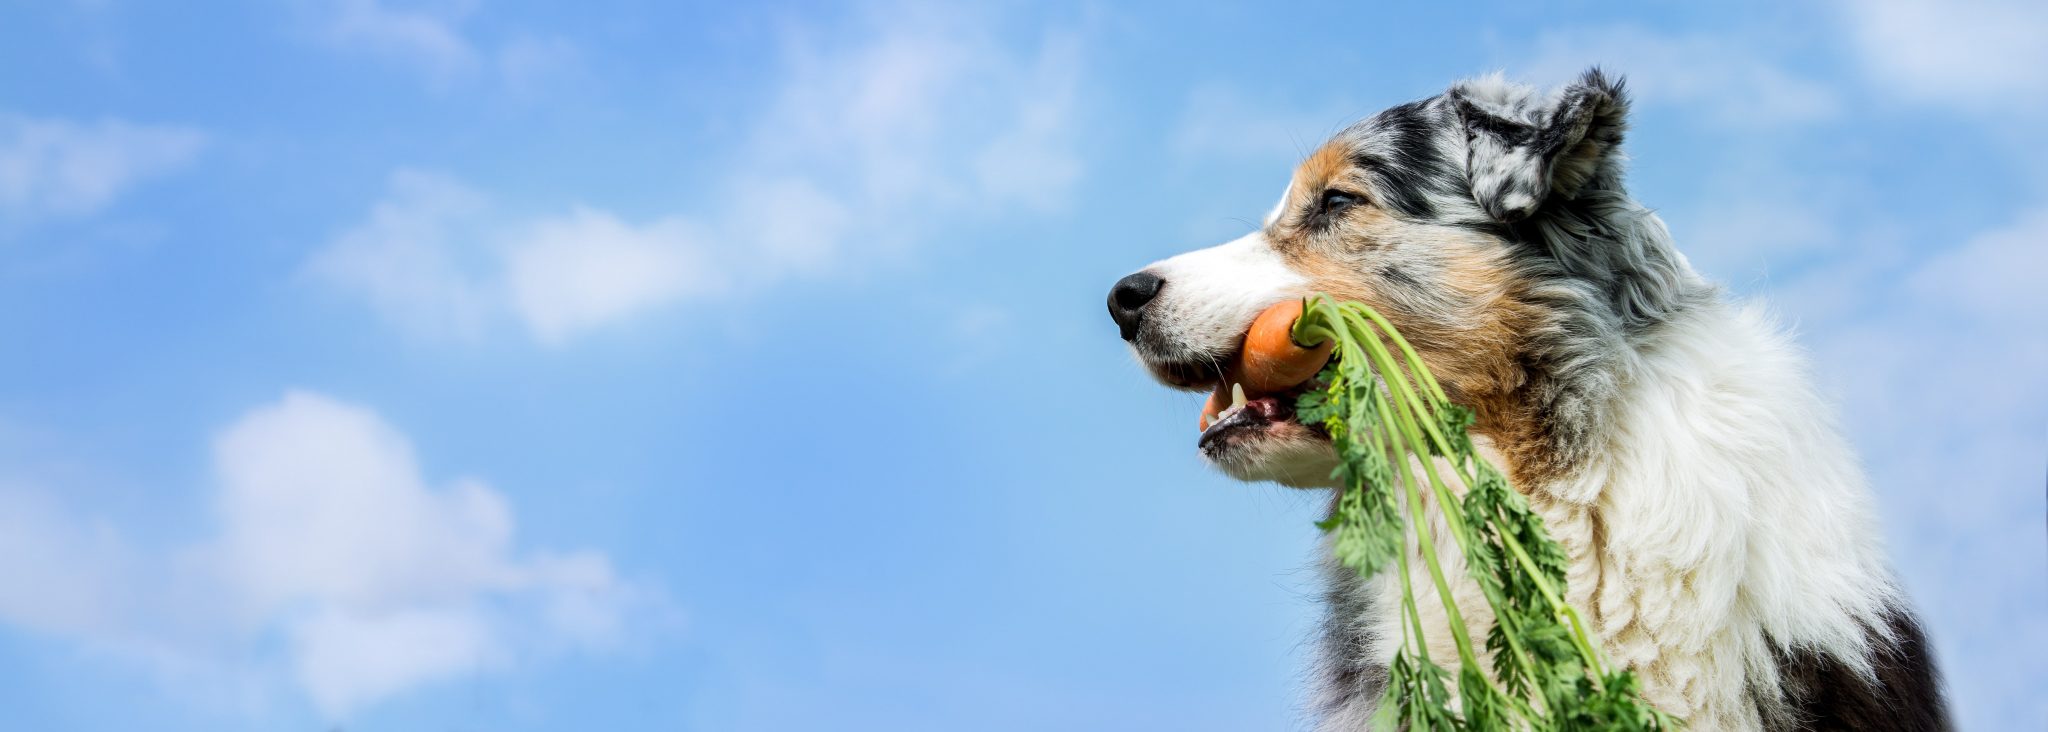 なぜ犬は草を食べてしまうのか その理由とは Newscast